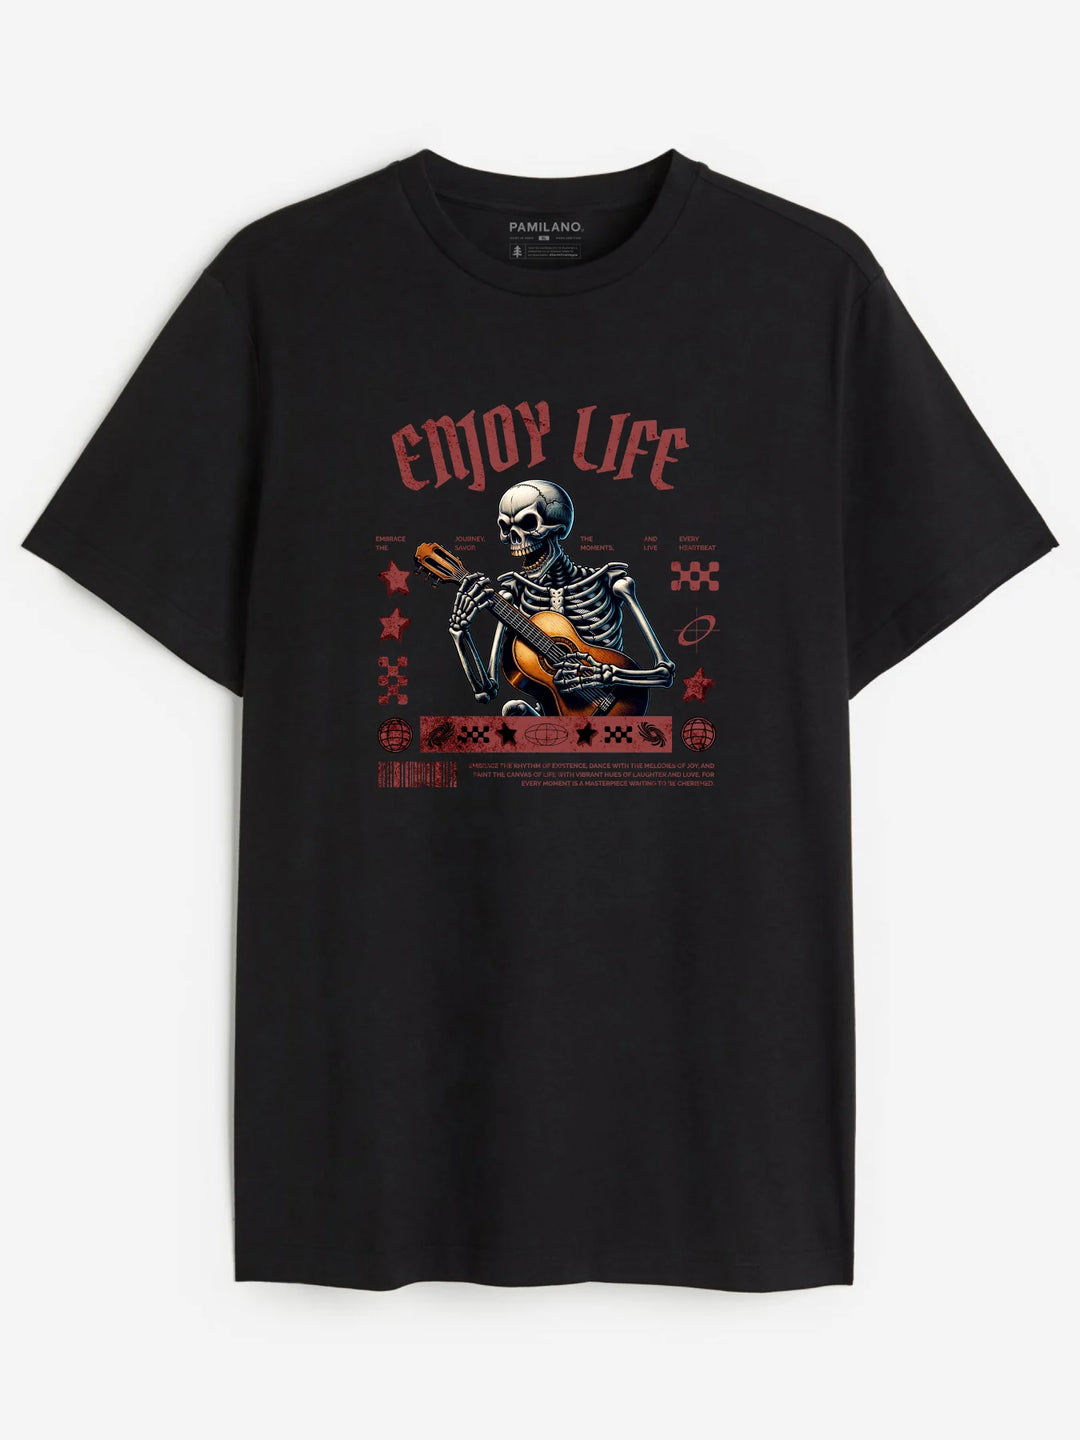 Enjoy Live With Skeleton - Unisex T-Shirt